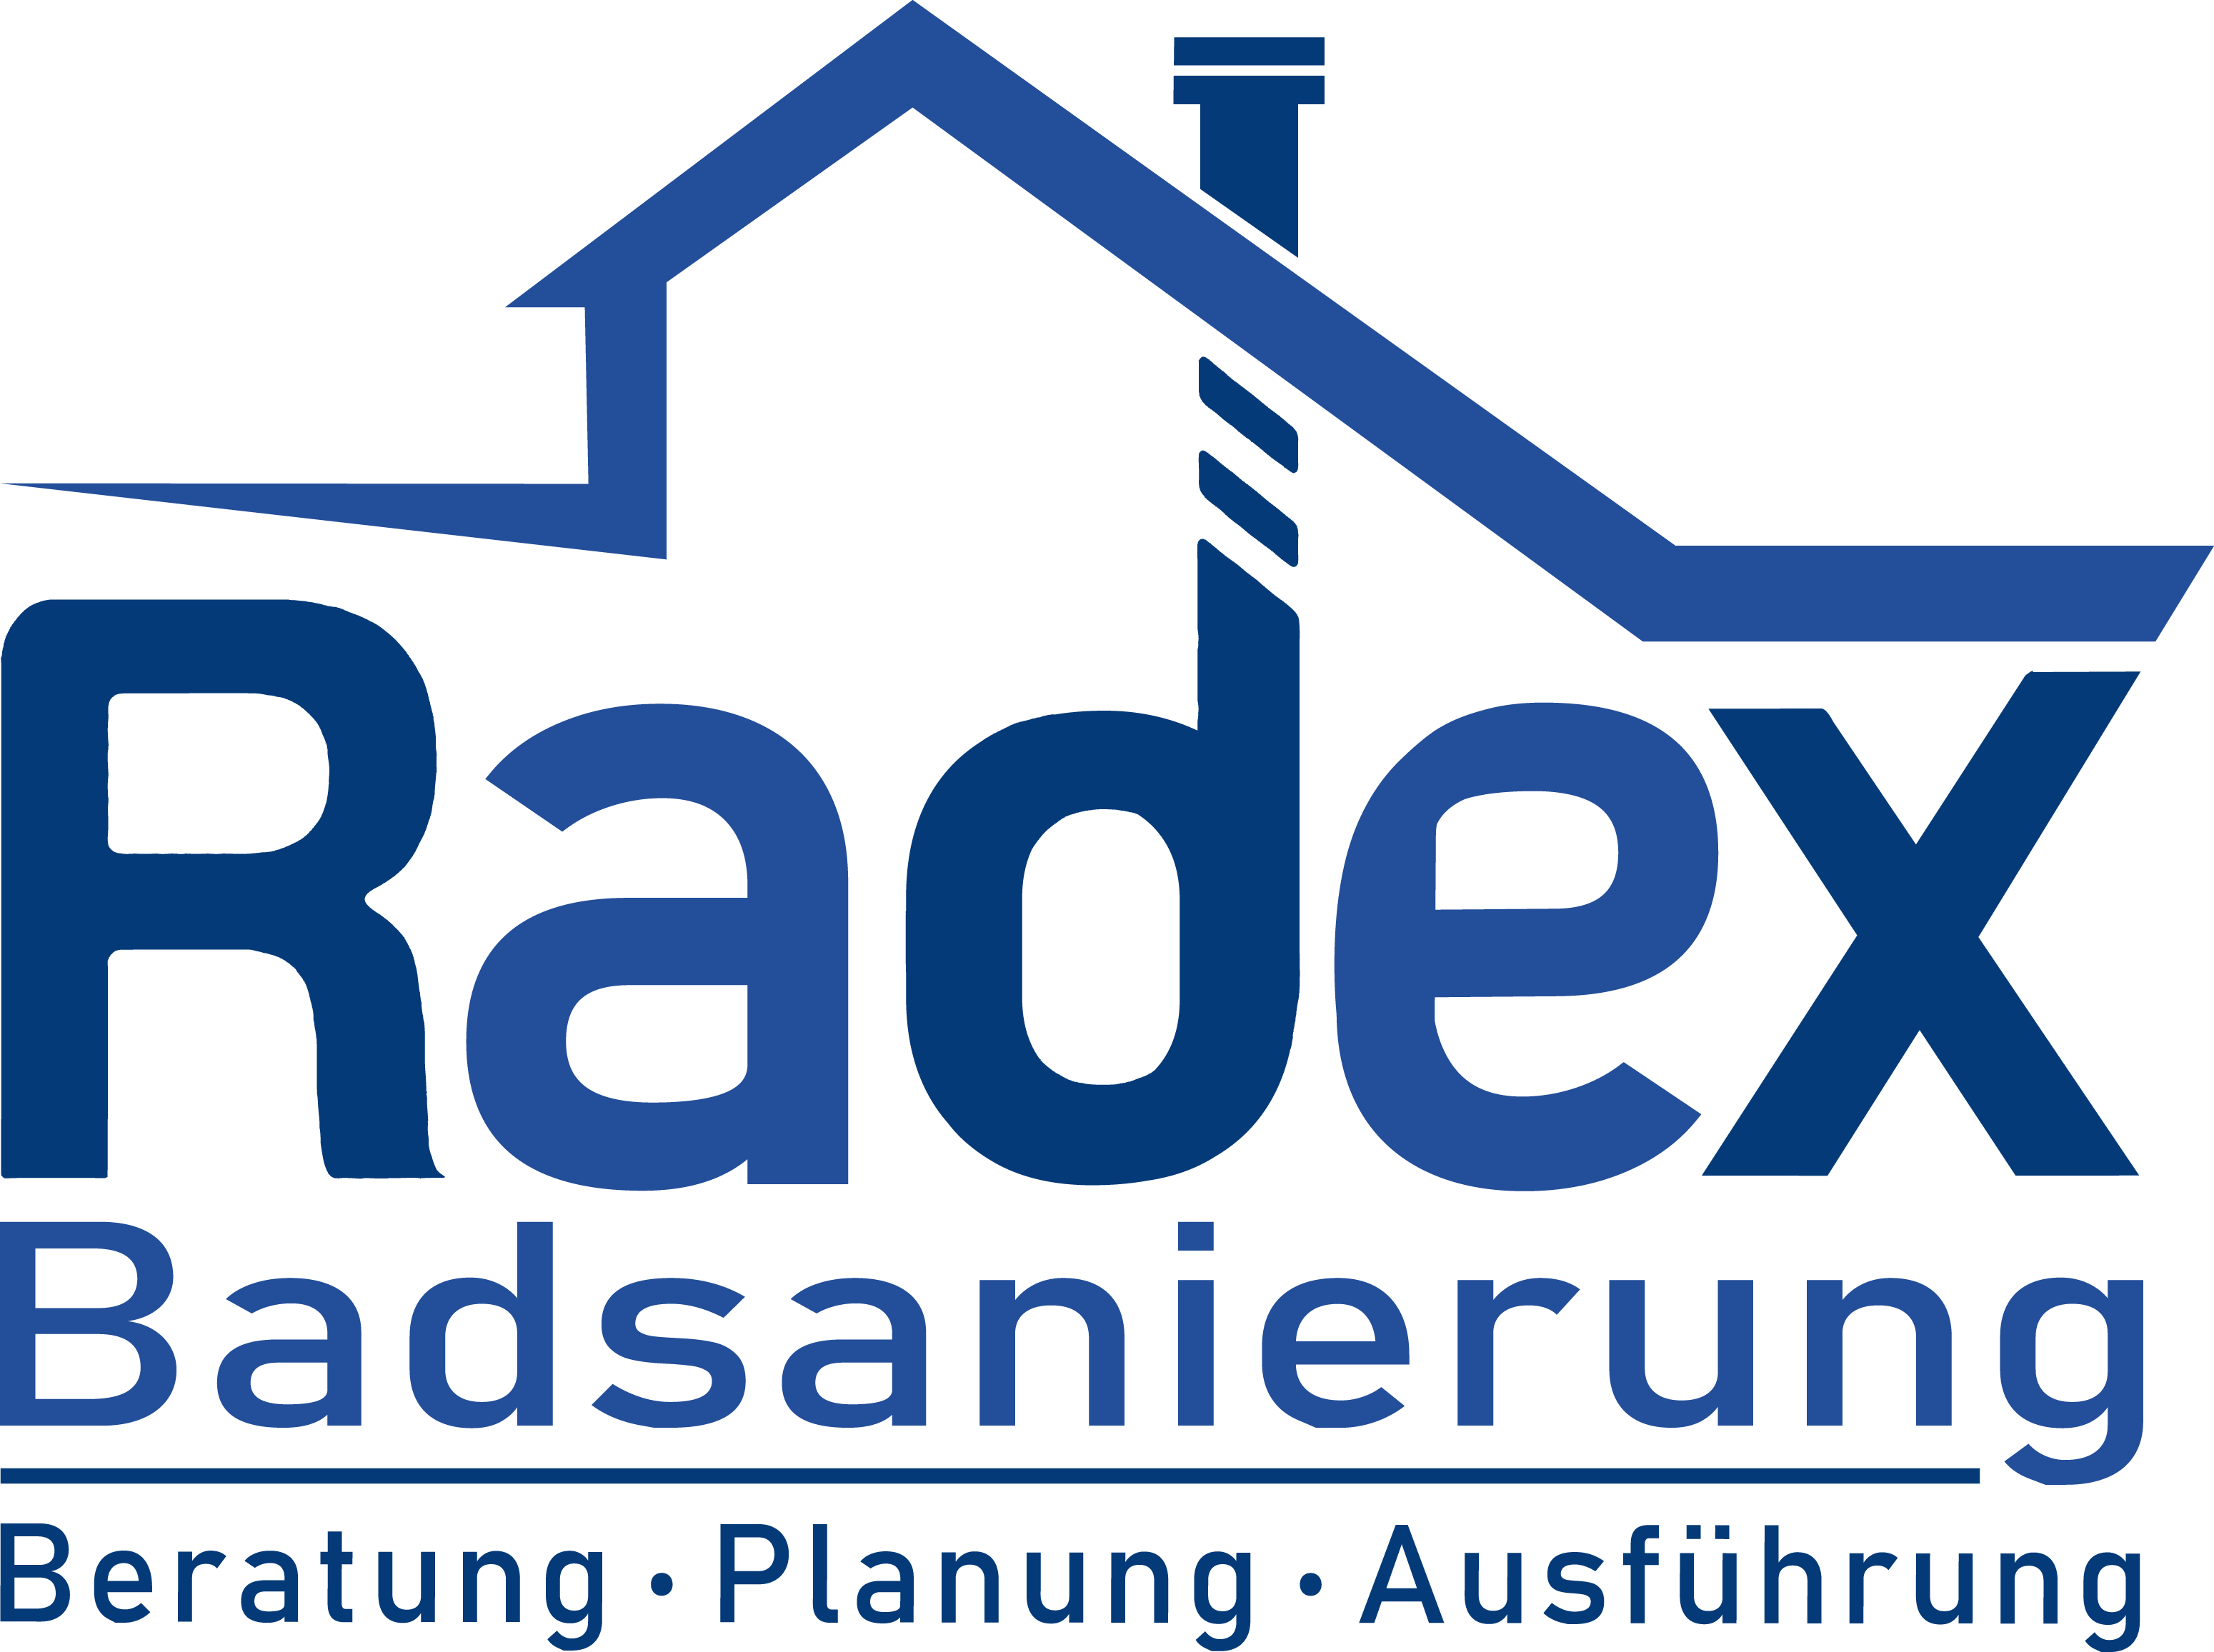 Radex, Badsanierung, Kontakt, Telefon, Email, Anfahrt